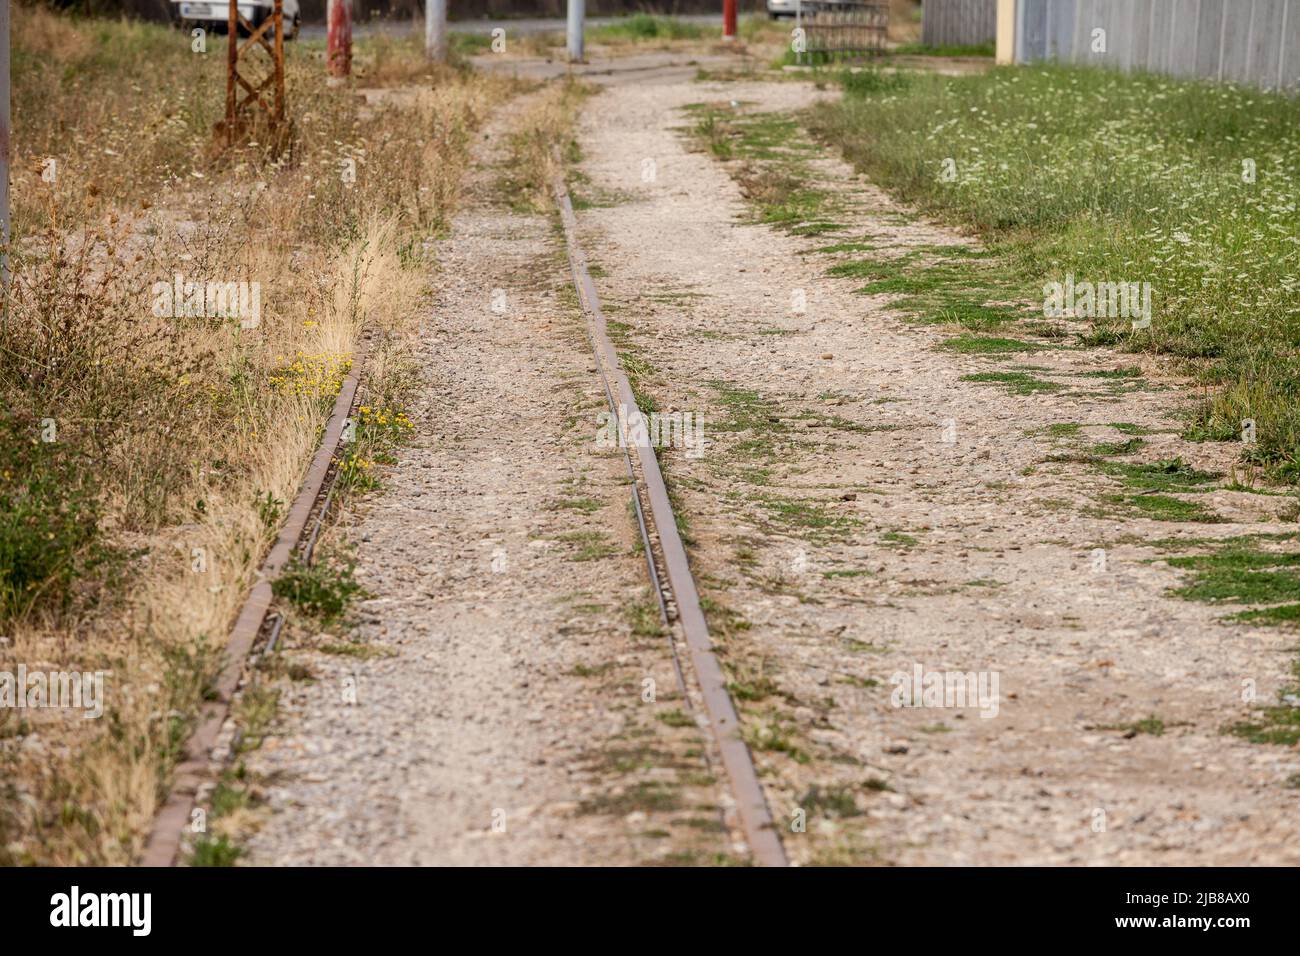 Imagen de una vía de tren abandonada con sus líneas férreas oxidadas con perspectiva, cubiertas de hierba y barro. Foto de stock